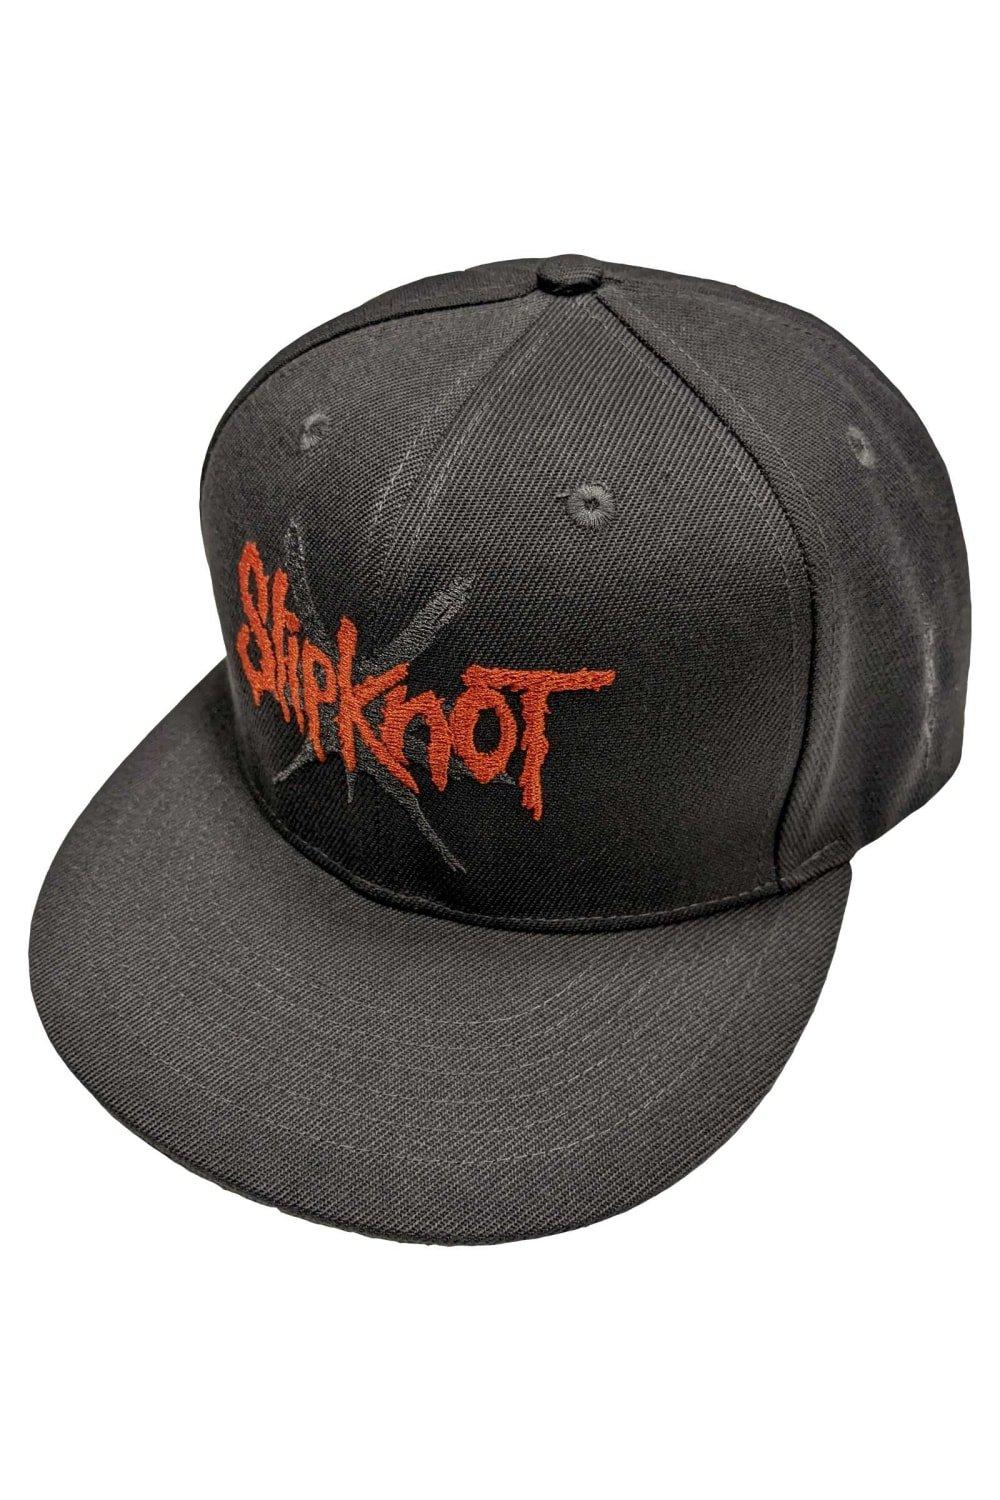 Кепка Snapback с 9-конечной звездой Slipknot, серый